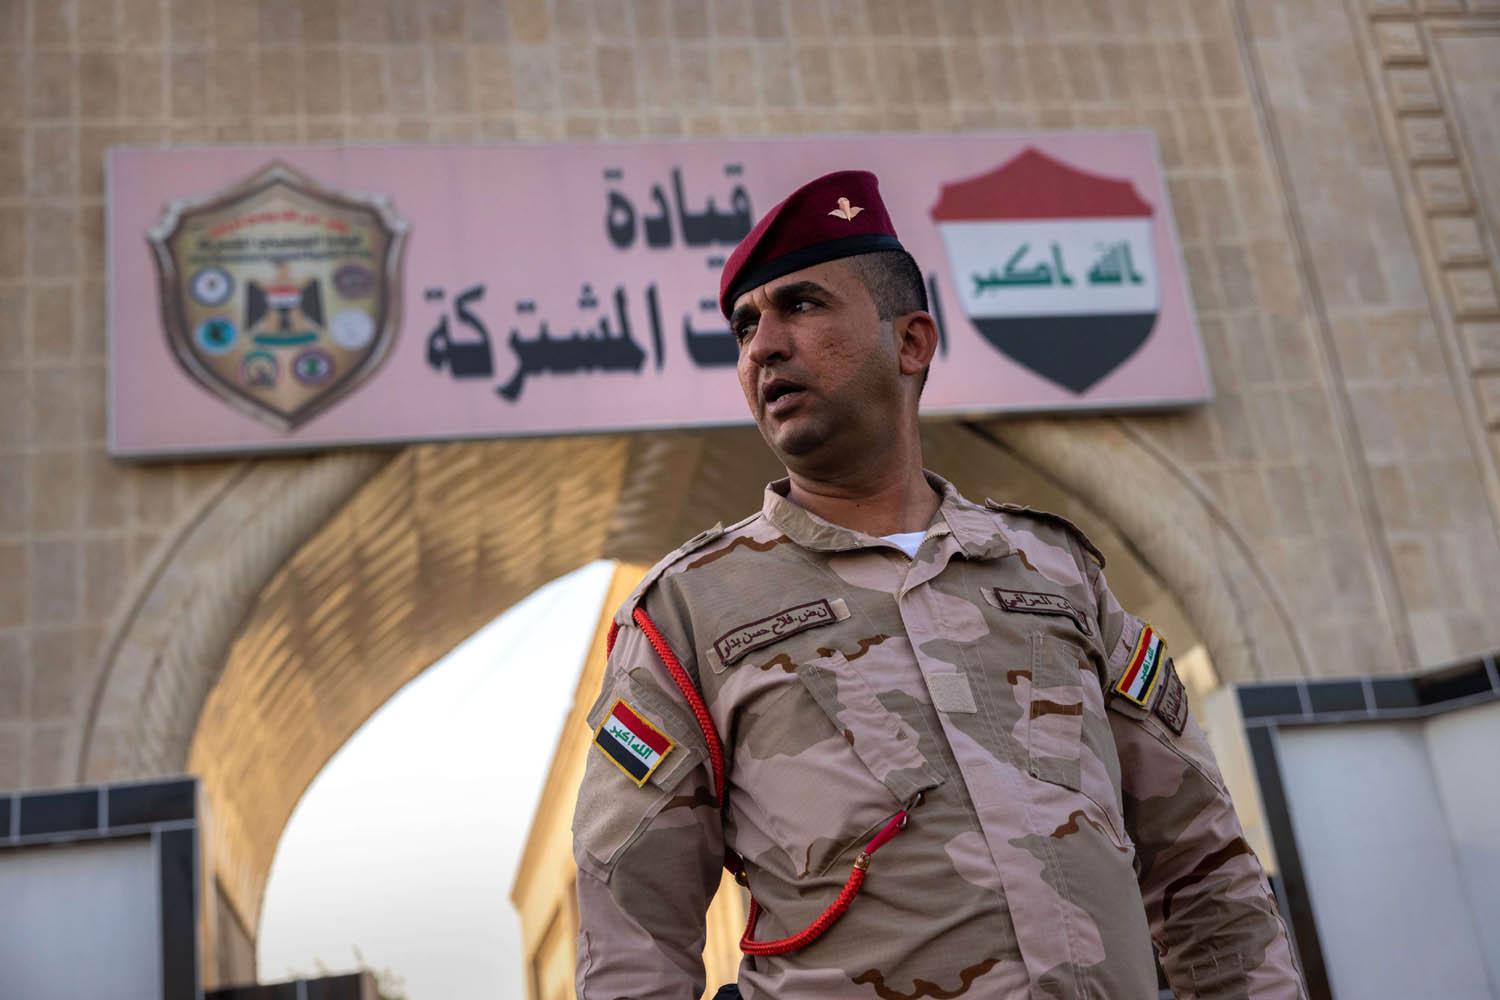 بغداد تدفع بتعزيزات عسكرية بعد تعرض قاعدة أميركية لهجمات بطائرات مسيرة